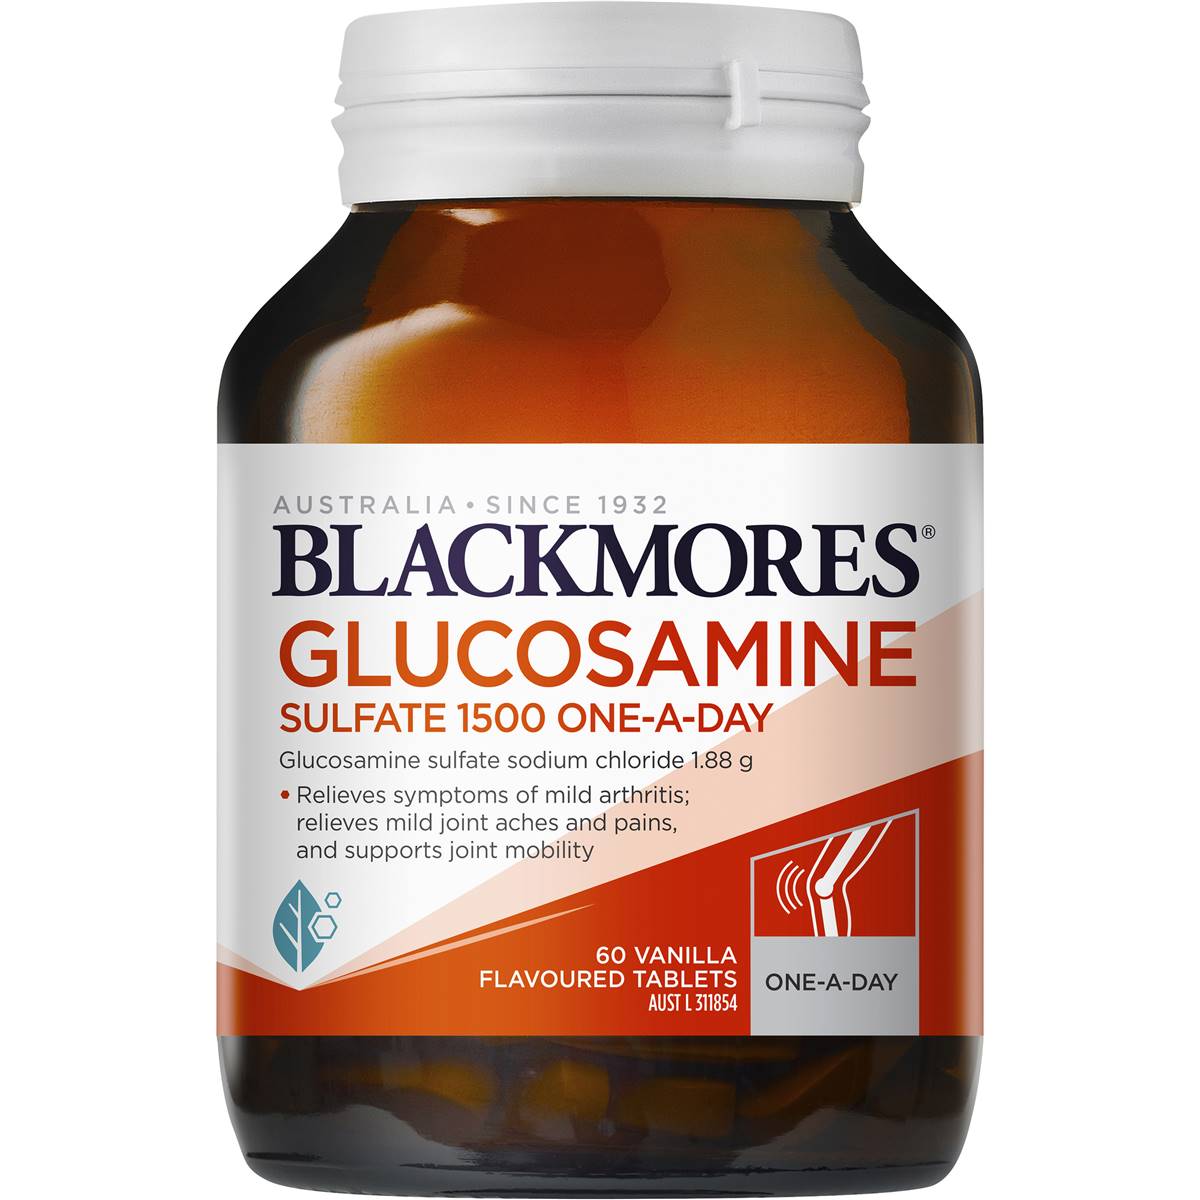 Glucosamine Sulfate Blackmores 1500mg One A Day Úc 60 viên